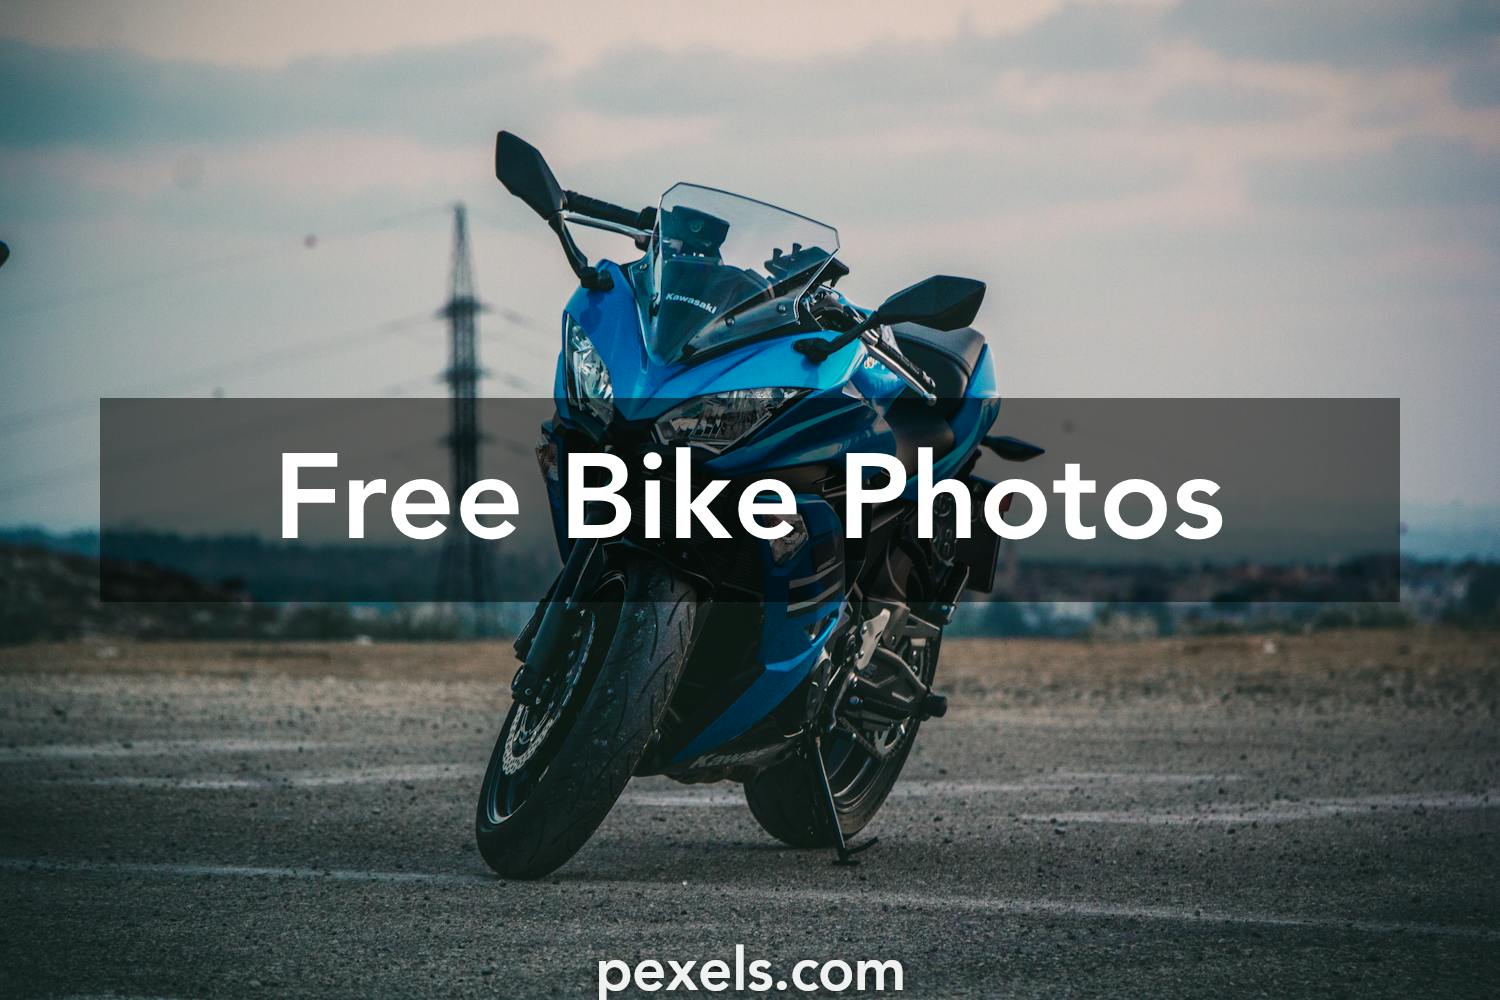 Bike Photos Pexels Free Stock Photos